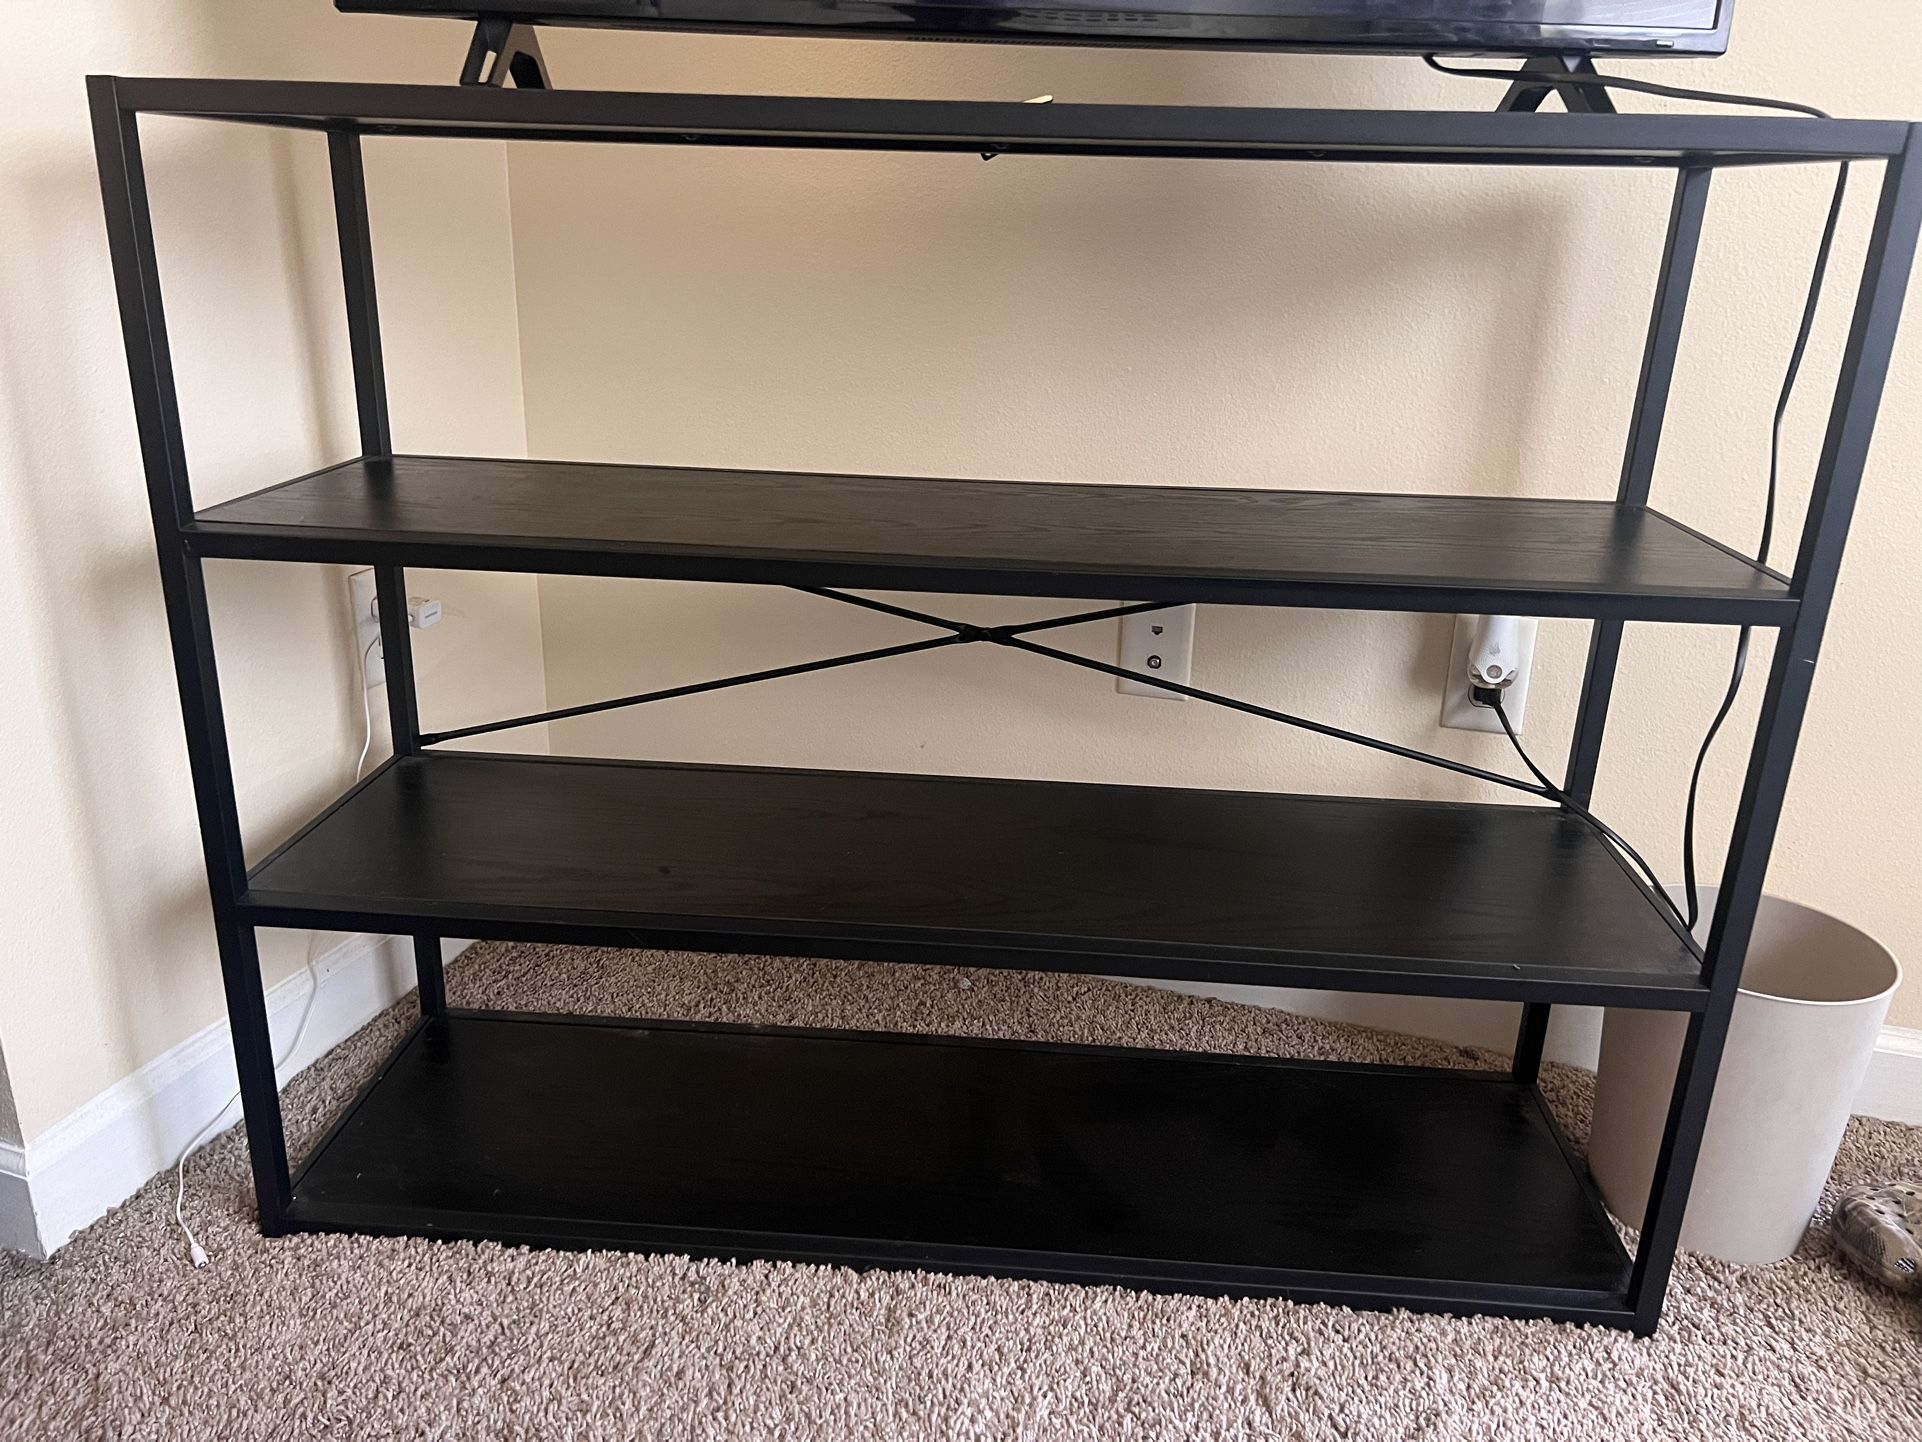 3 shelf stand